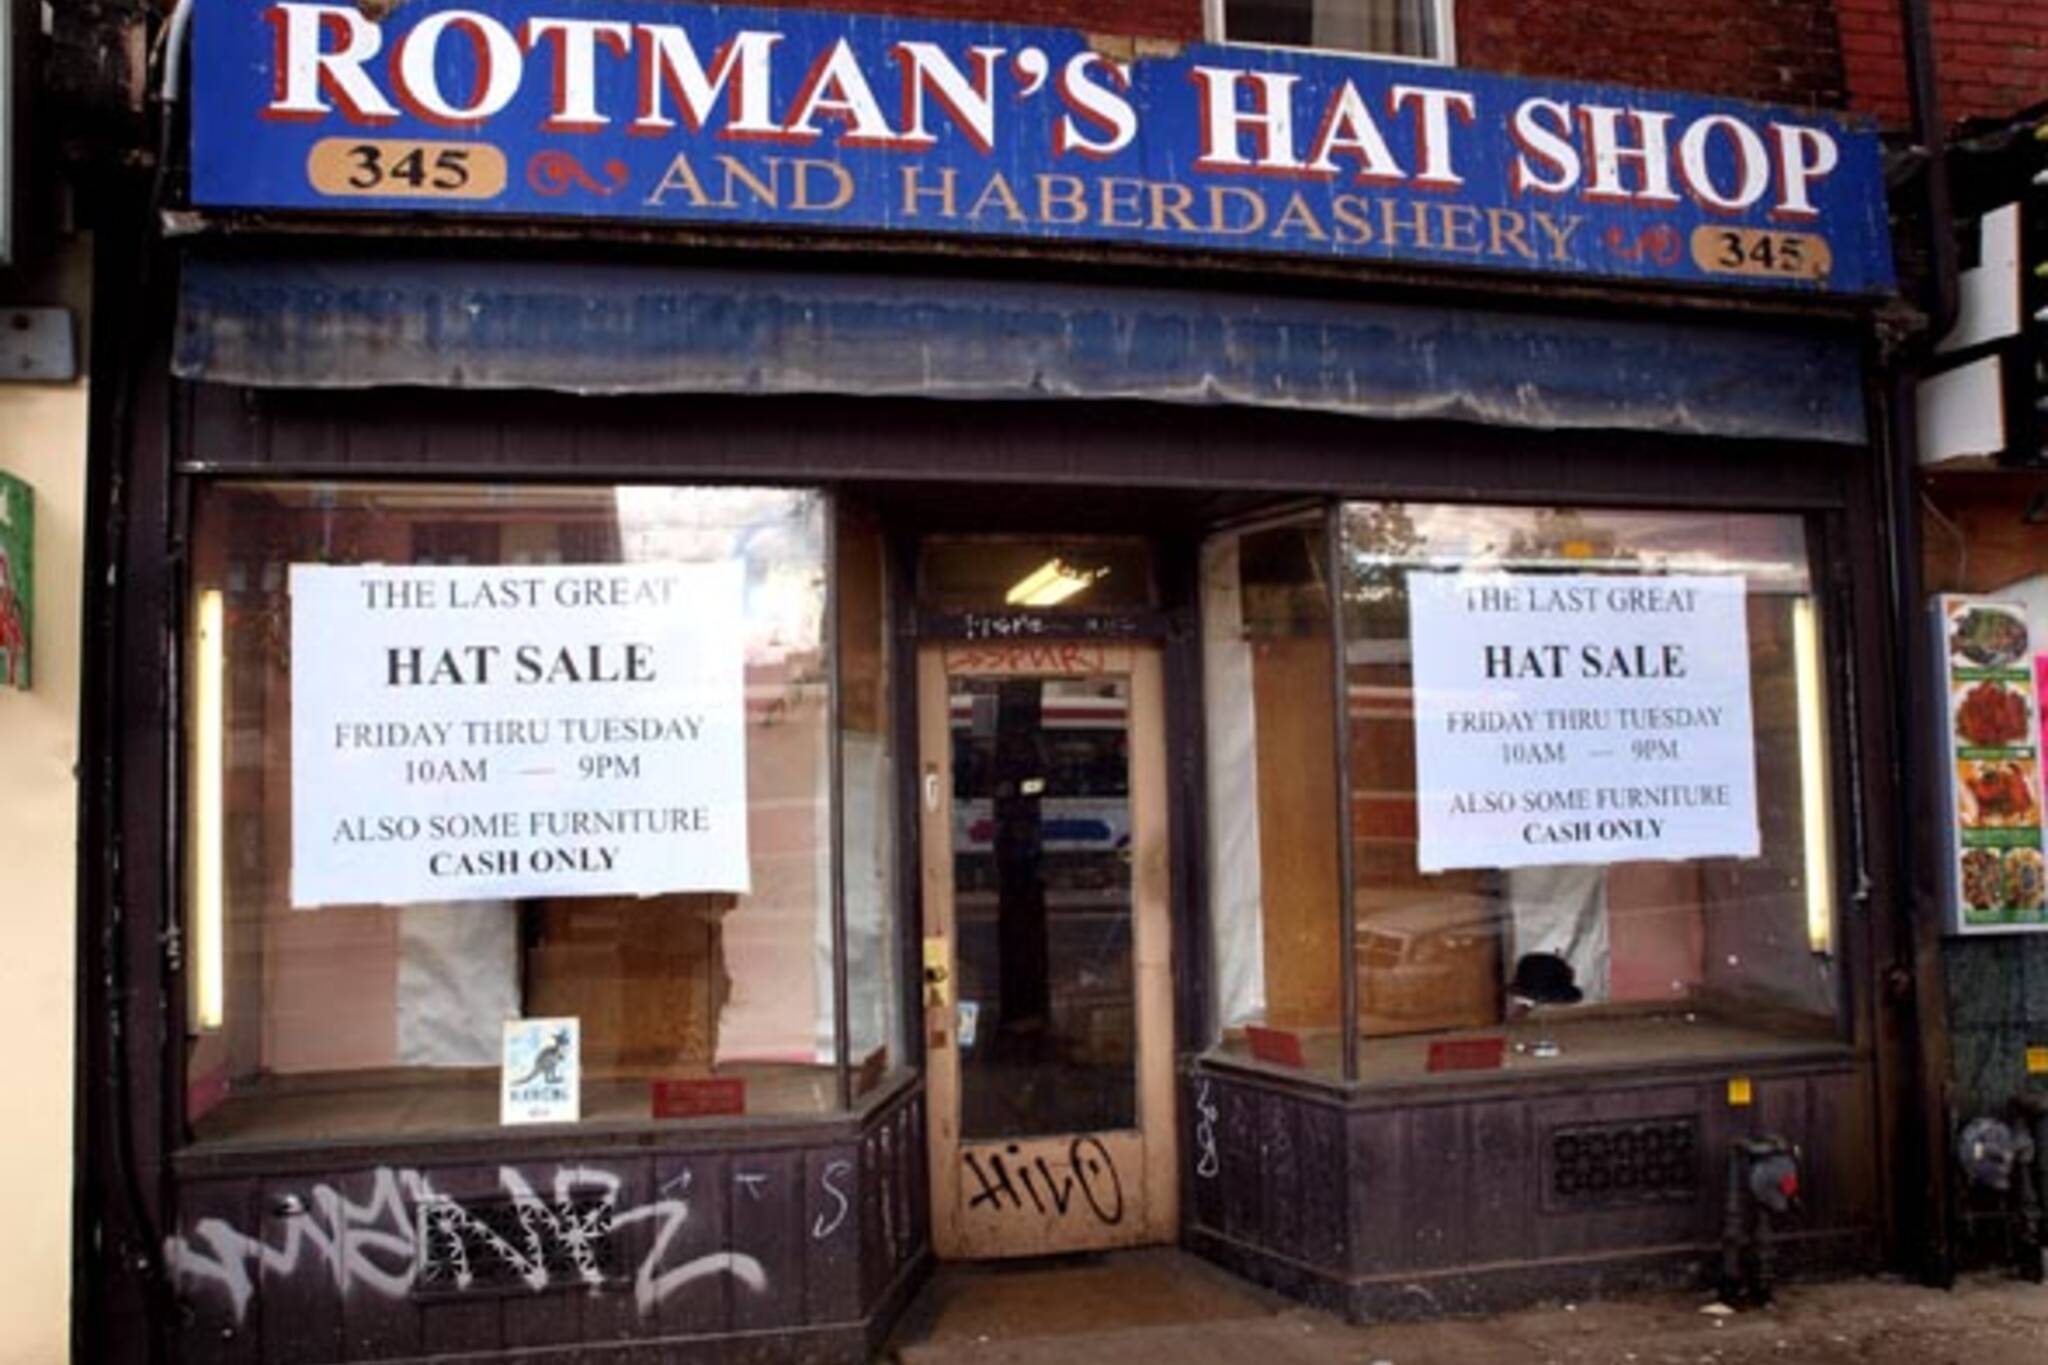 Rotman's Hats closes